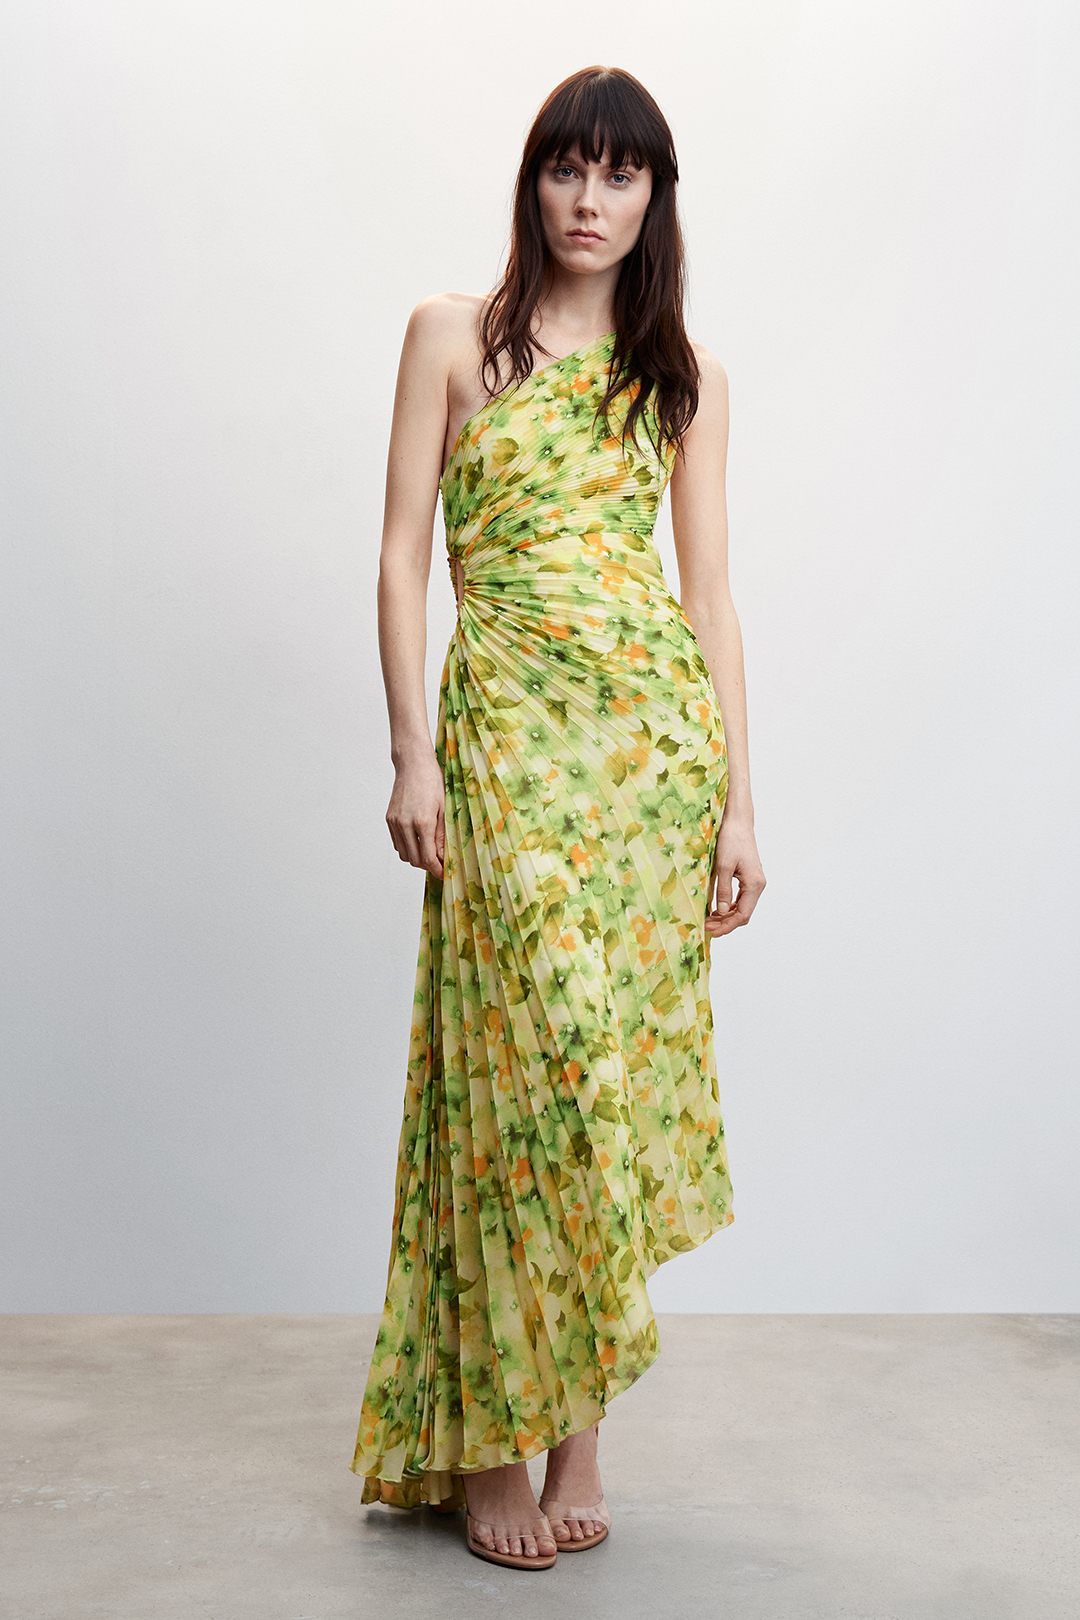 Vestido asimétrico con estampado floral y tejido plisado. Disponible para alquilar en Mango.